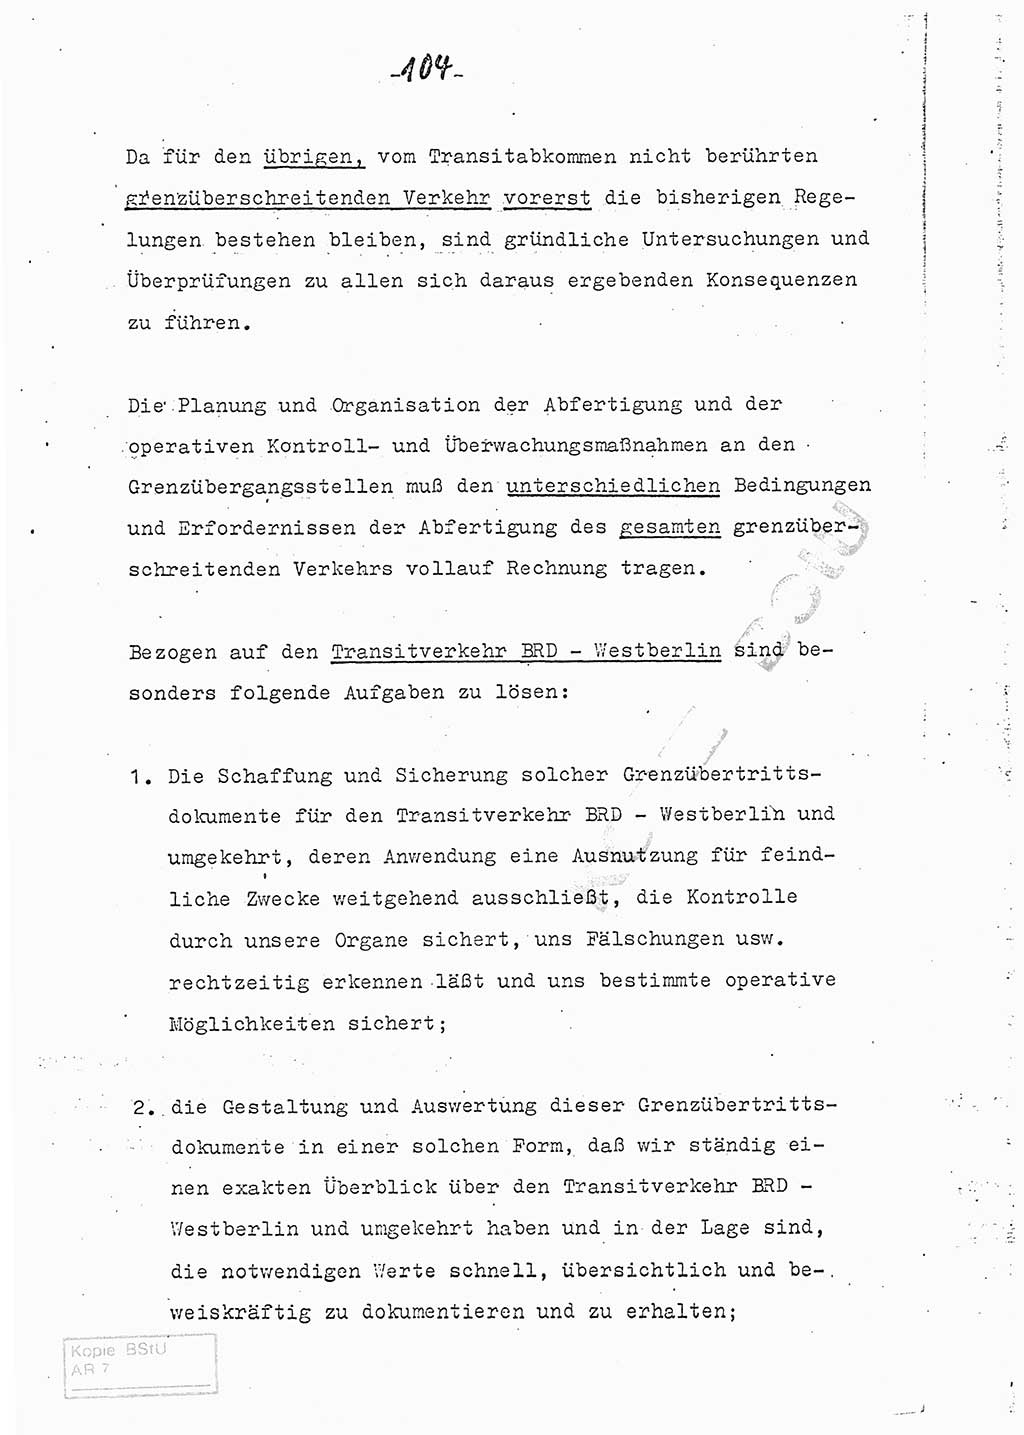 Referat (Entwurf) des Genossen Minister (Generaloberst Erich Mielke) auf der Dienstkonferenz 1972, Ministerium für Staatssicherheit (MfS) [Deutsche Demokratische Republik (DDR)], Der Minister, Geheime Verschlußsache (GVS) 008-150/72, Berlin 25.2.1972, Seite 104 (Ref. Entw. DK MfS DDR Min. GVS 008-150/72 1972, S. 104)